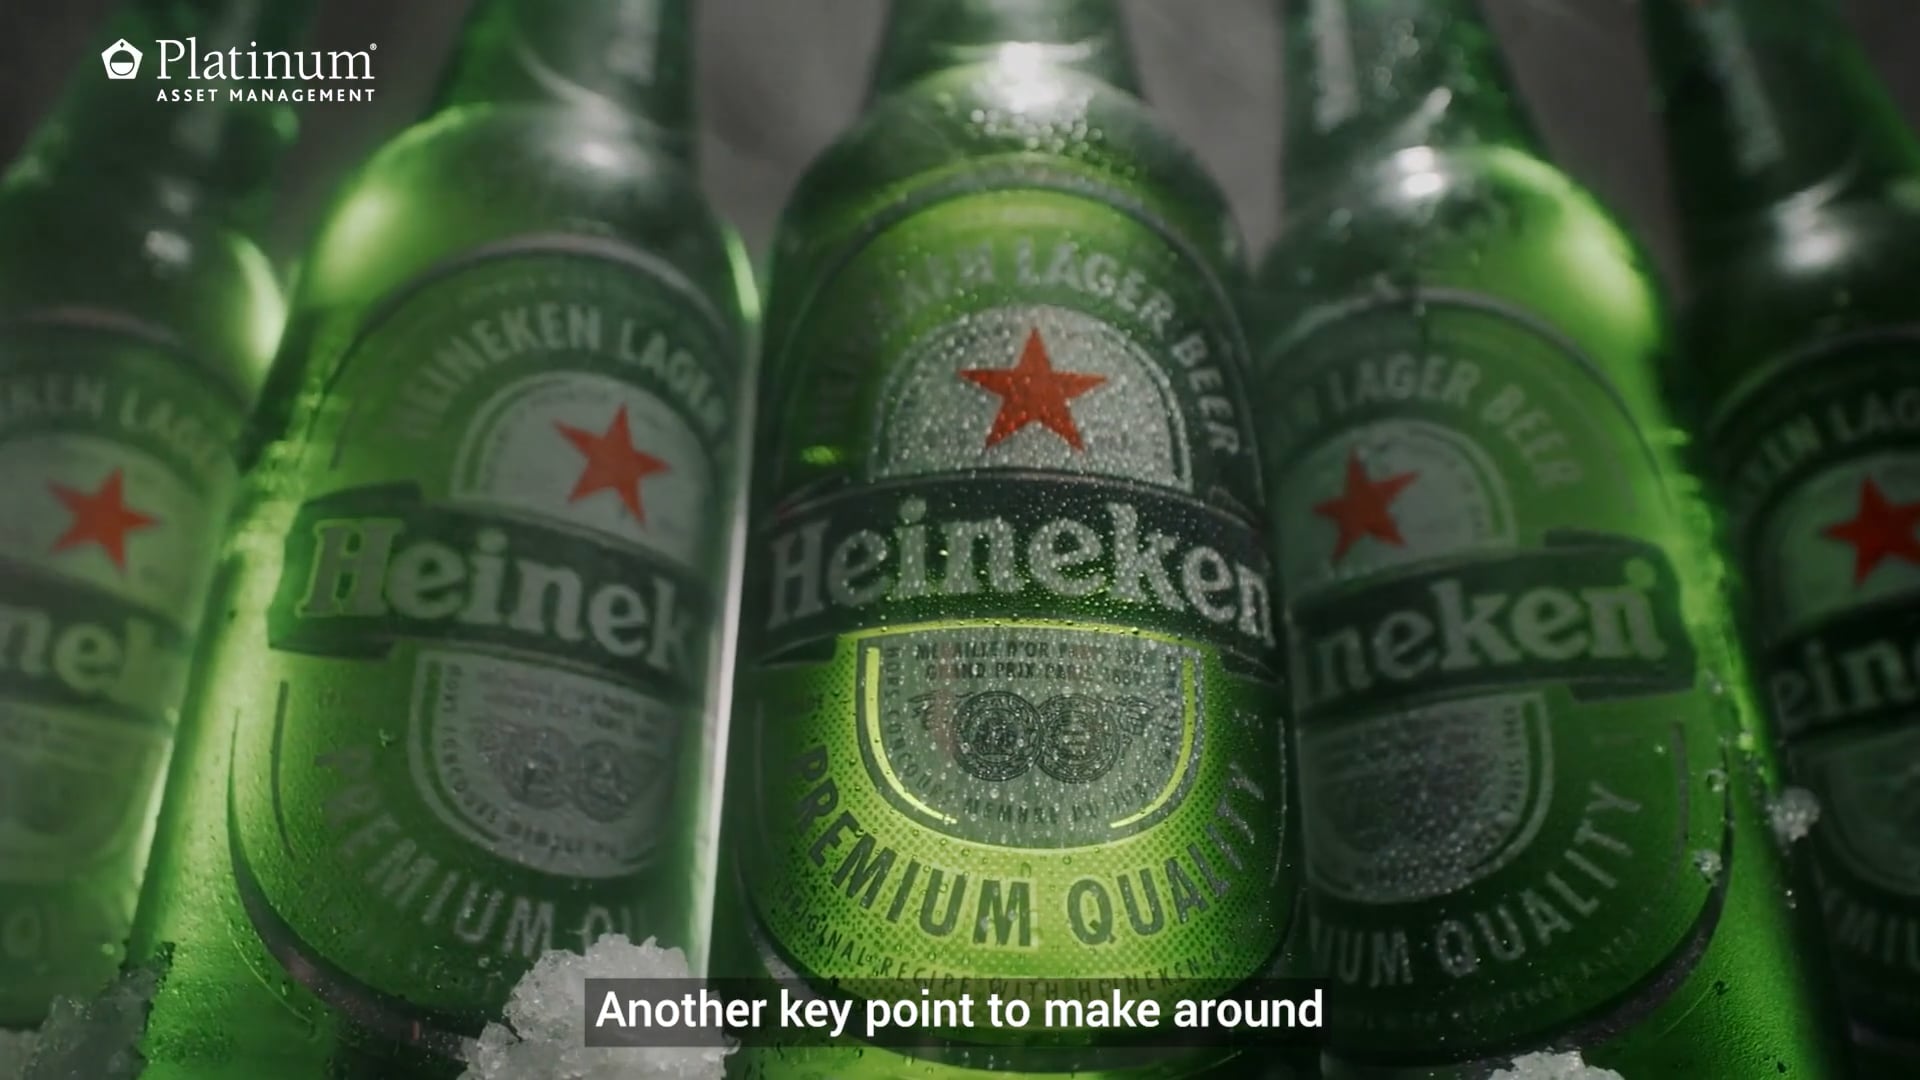 Heineken: refreshing the parts